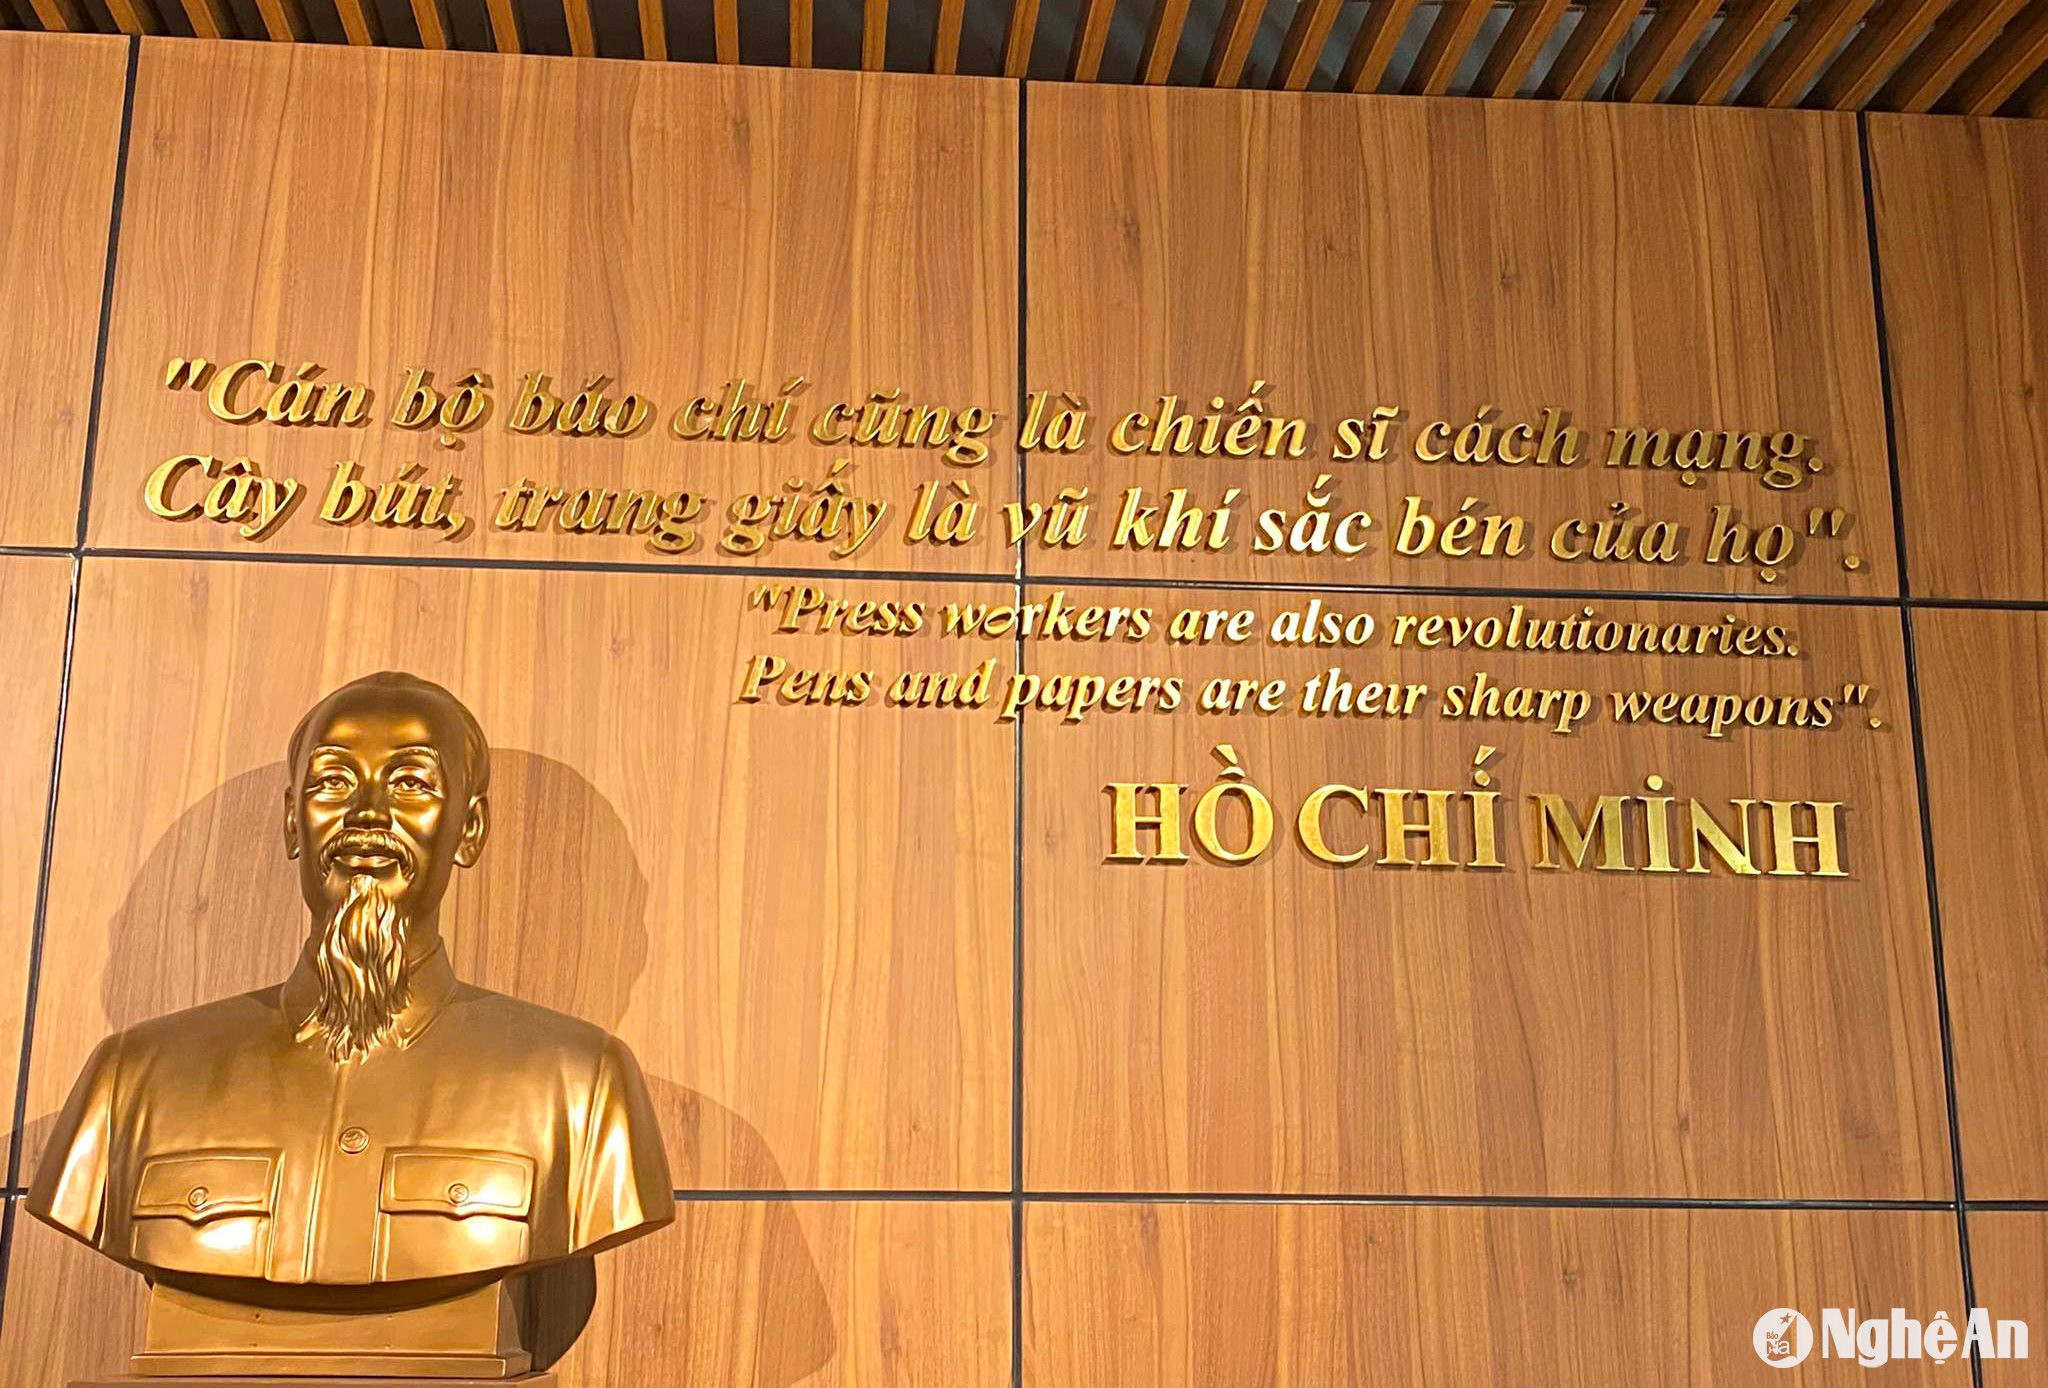 Lời Chủ tịch Hồ Chí Minh nói về báo chí (ảnh chụp tại Bảo tàng báo chí Việt Nam) - Ảnh Vân Thiêng